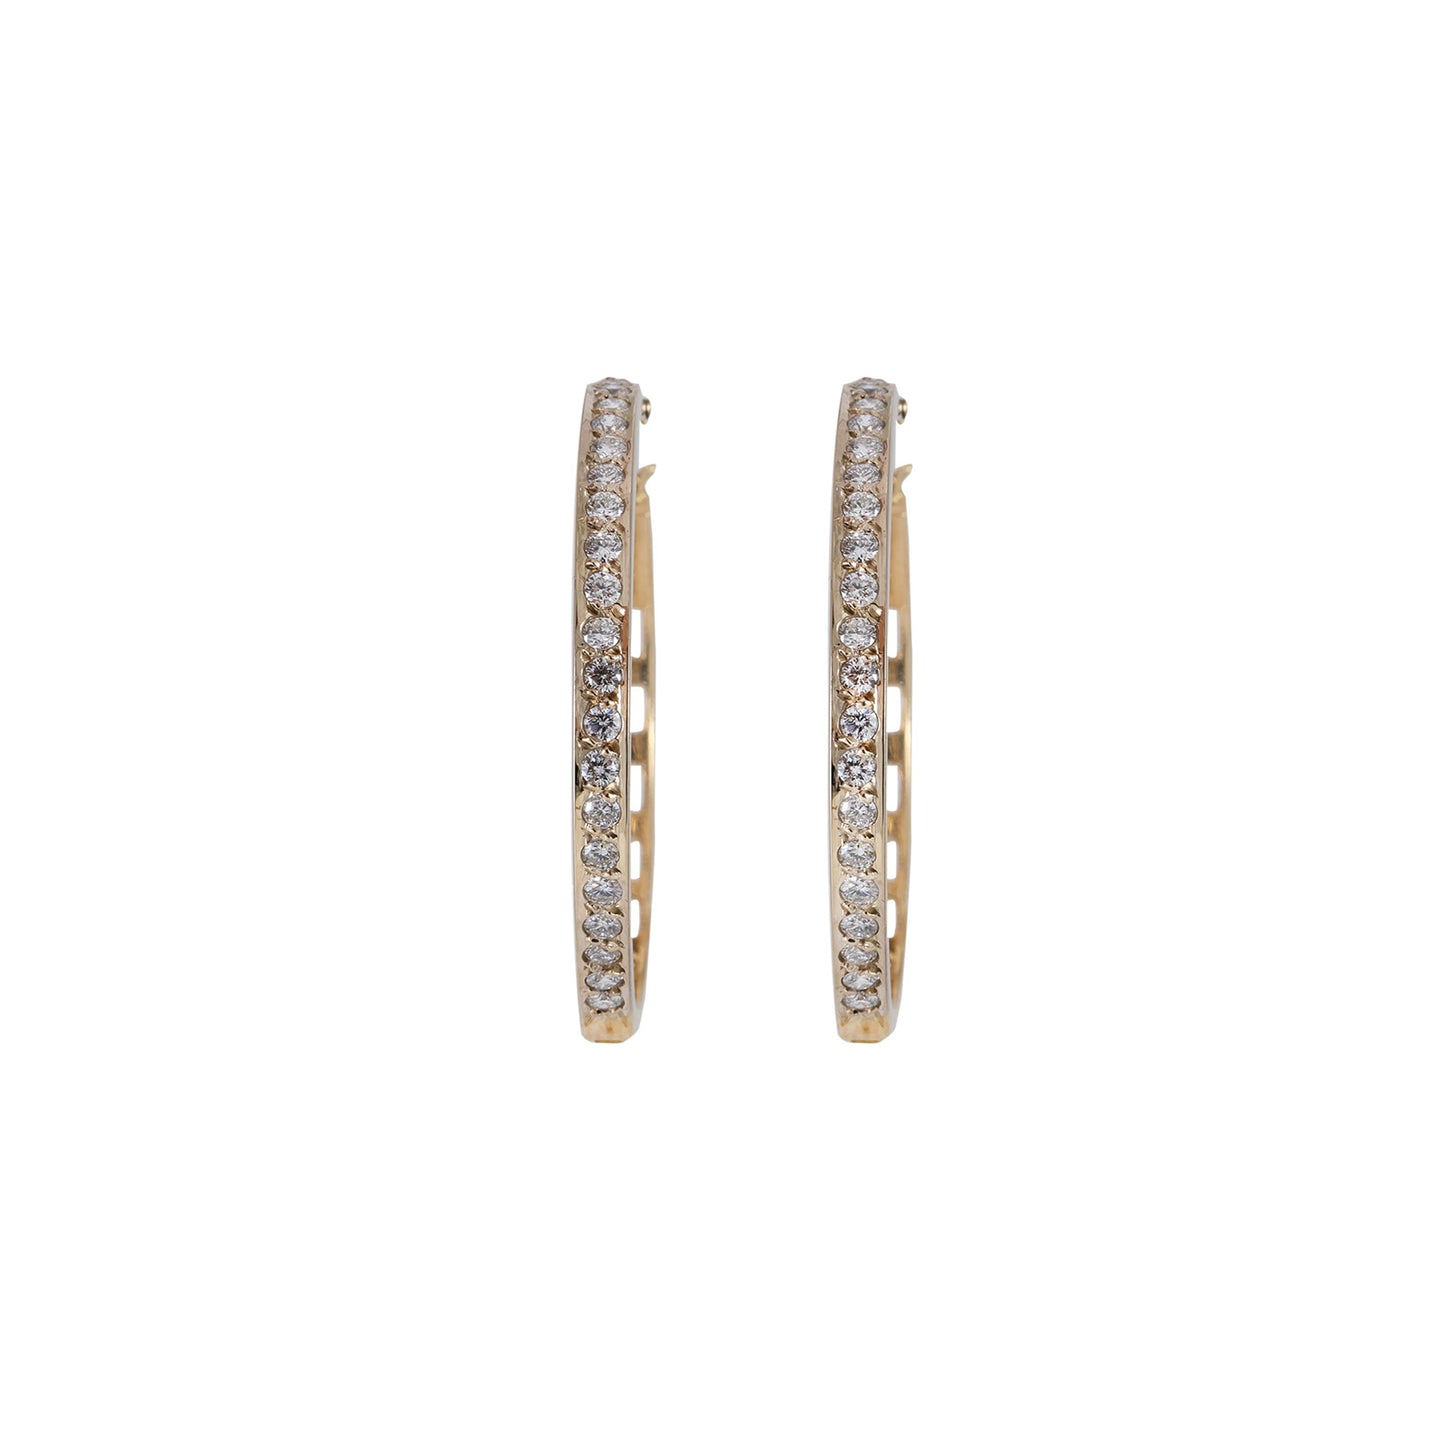 Diamond hoop earrings bail 29mm yellow gold white gold 14K women's jewelry diamond earrings